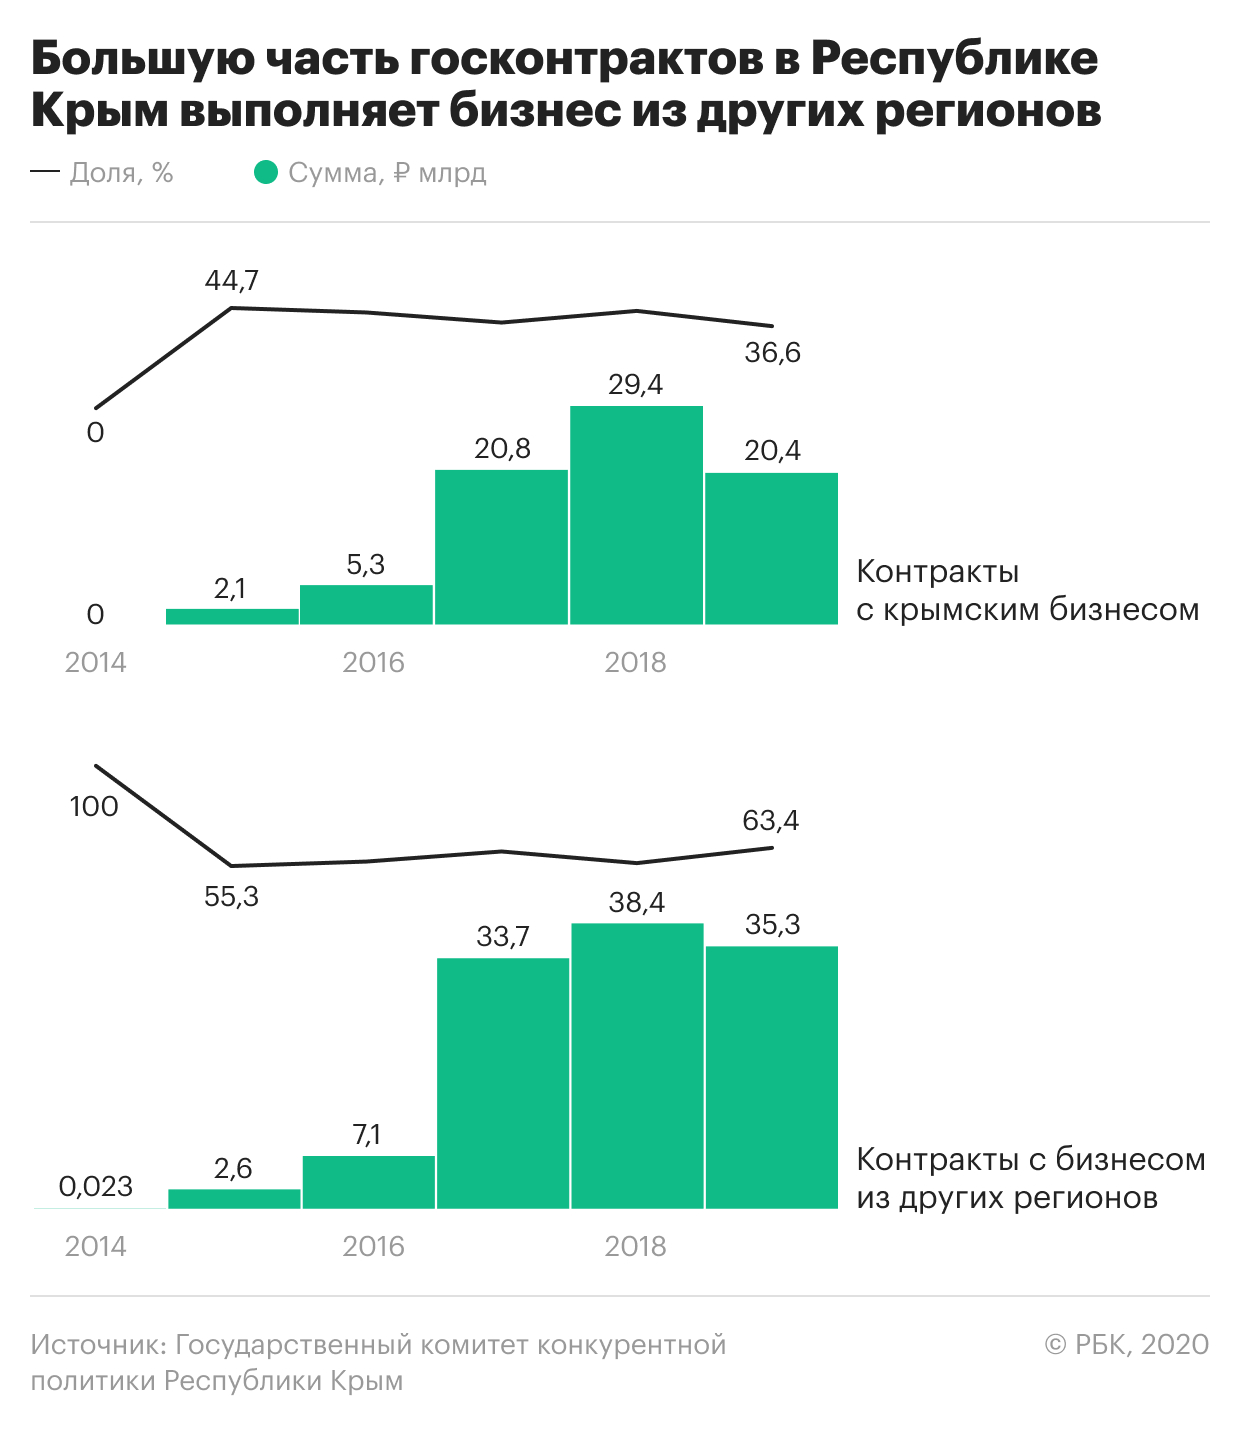 Большинство госконтрактов в Крыму пришлось на компании из других регионов